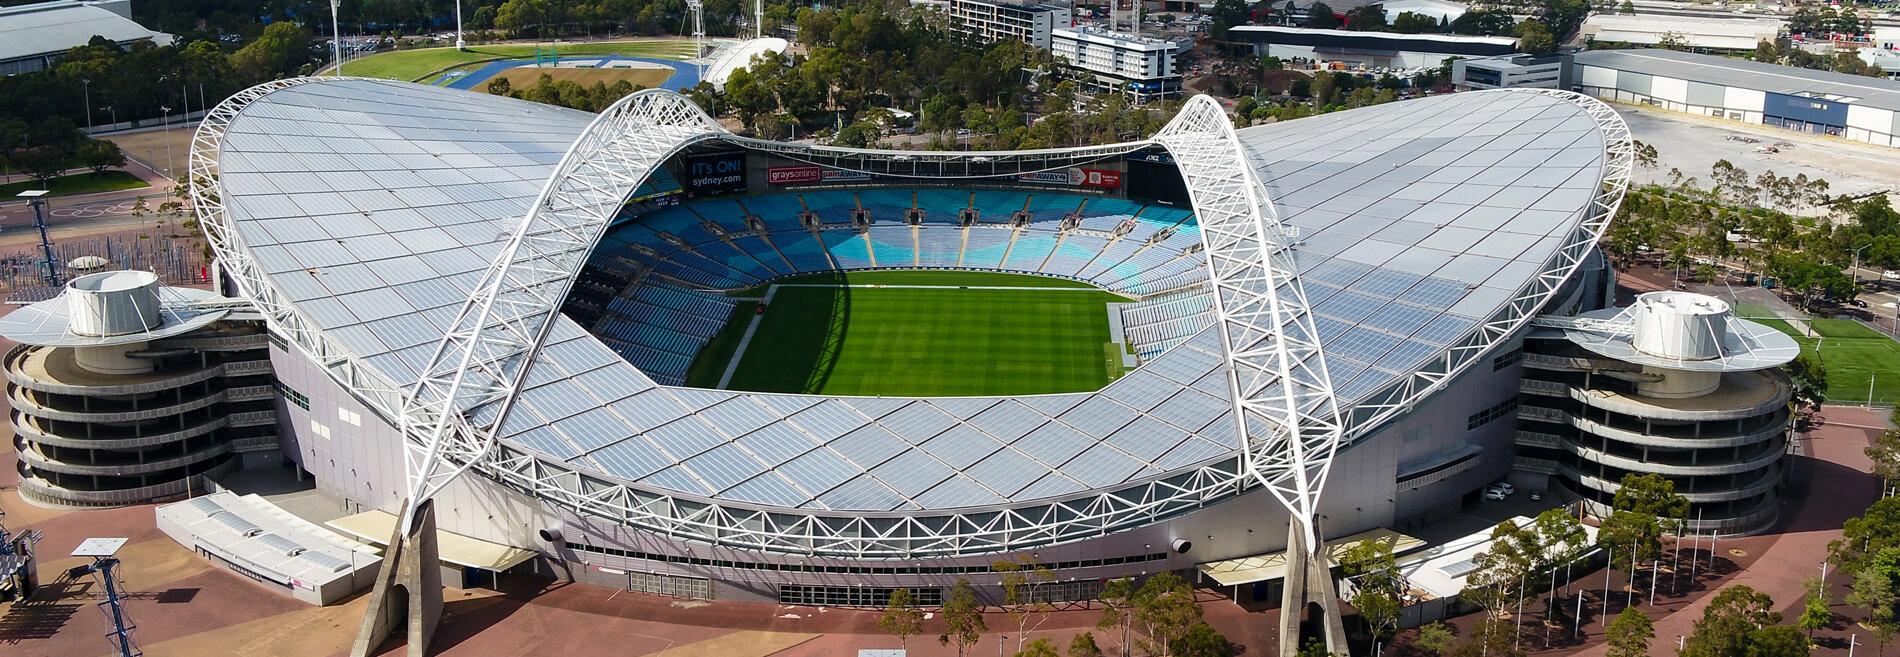 Стадионы ру. Олимпийский стадион Сидней. Стадион Австралия Сидней. Сидней стадион Калатрава. Стадион ANZ (стадион «Австралия»).